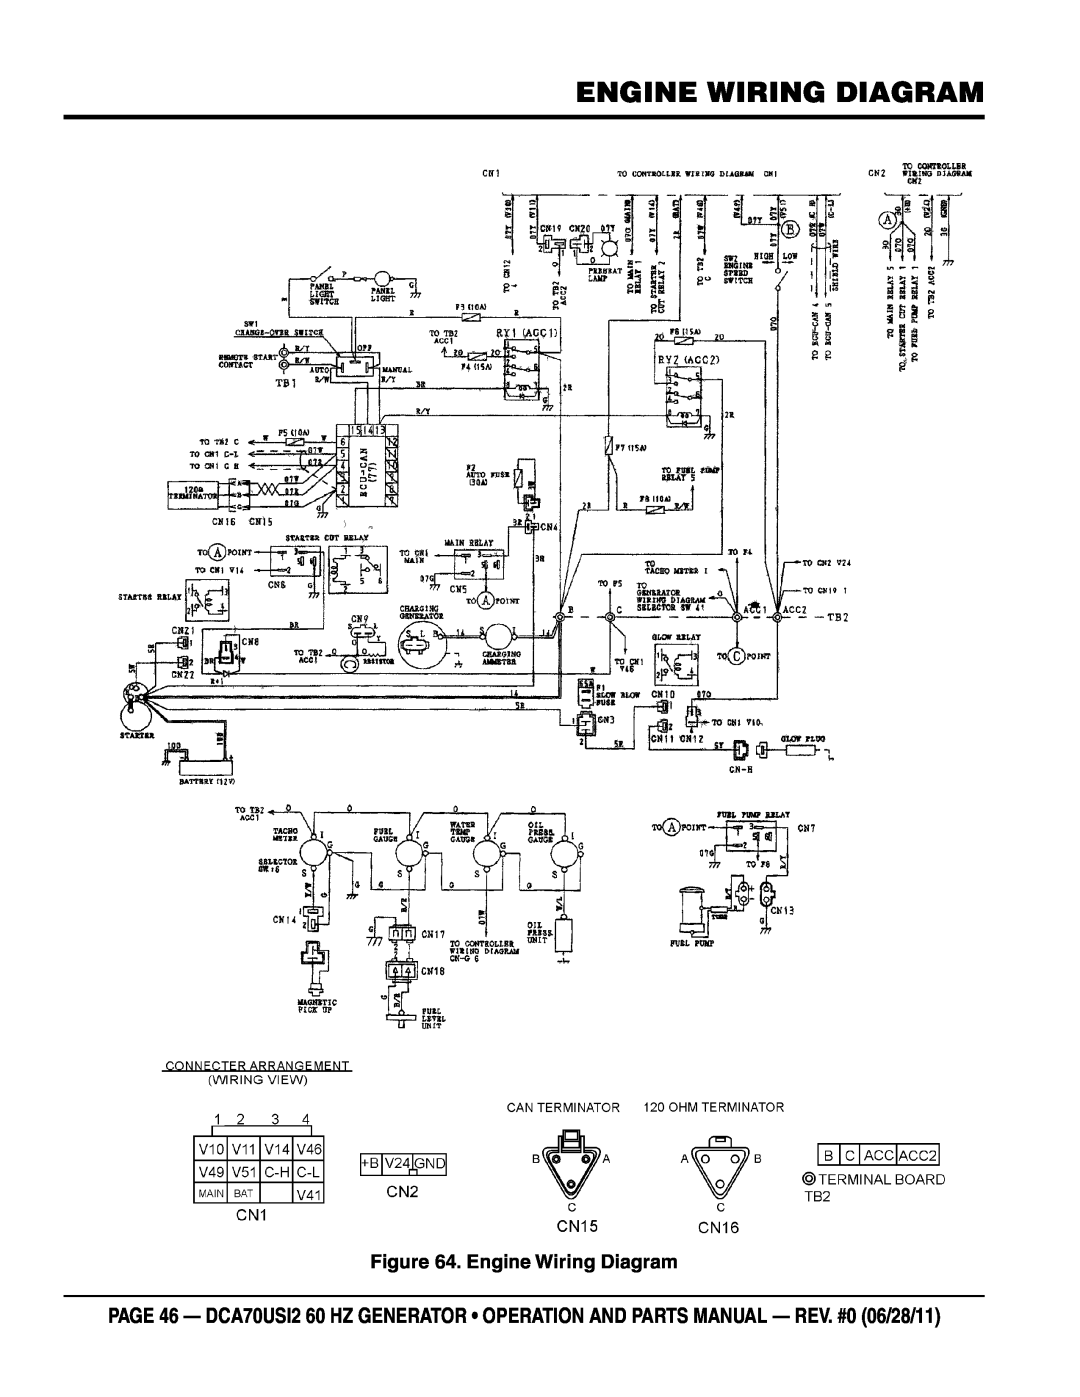 Multiquip DCA70USI2 manual Engine Wiring Diagram 